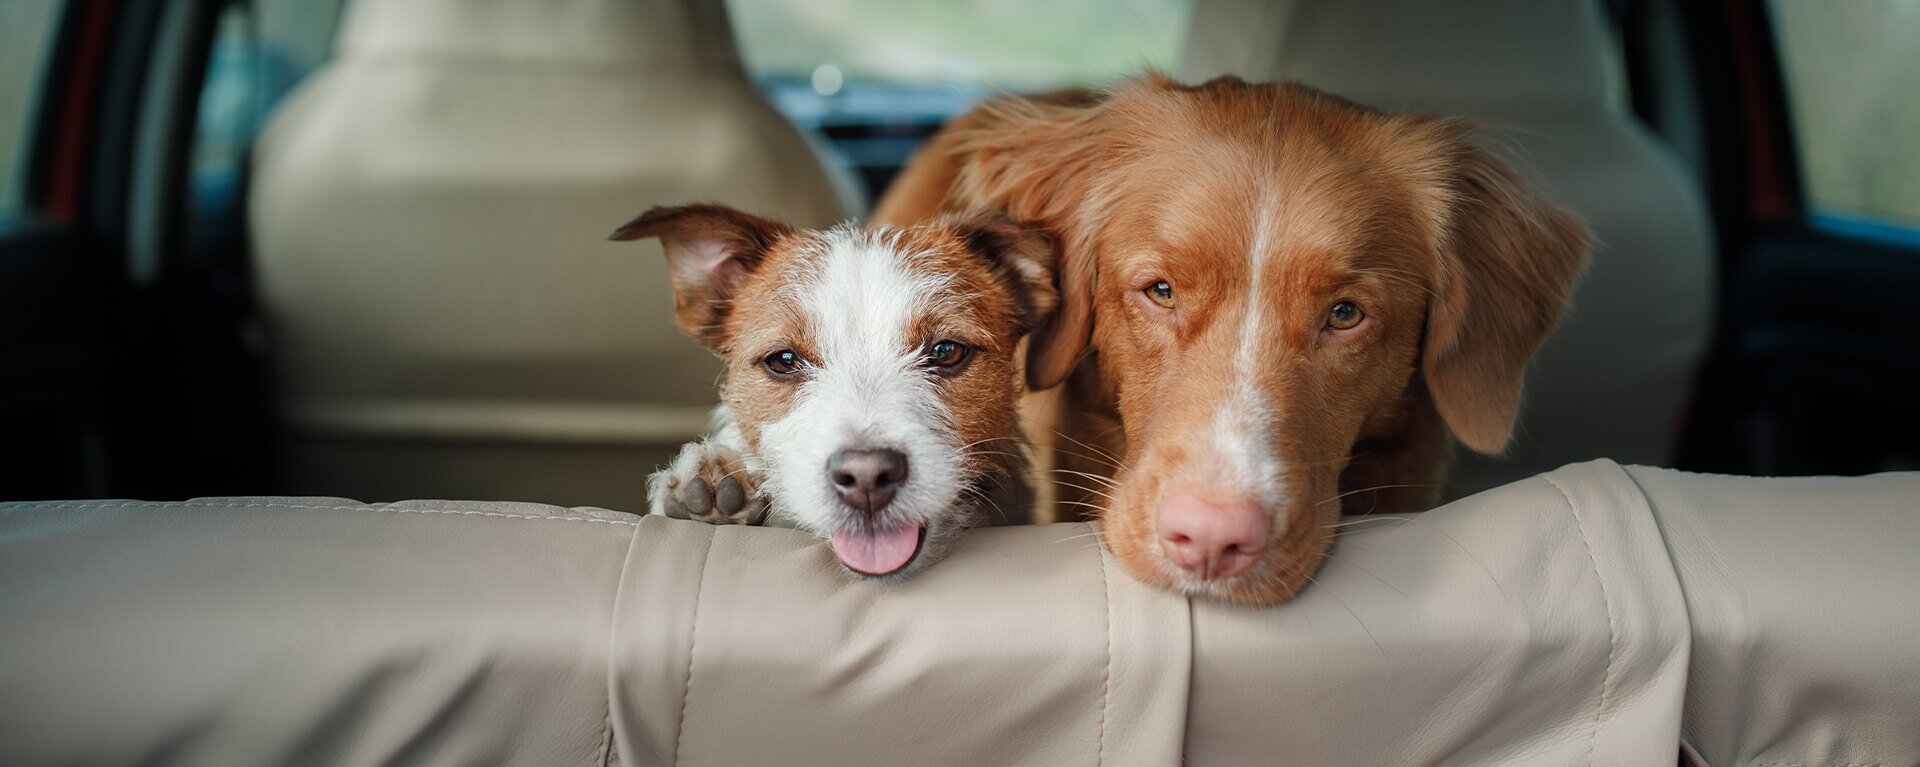 Как перевозить собаку в машине, поезде или самолете ✈ — ProPlan.ru